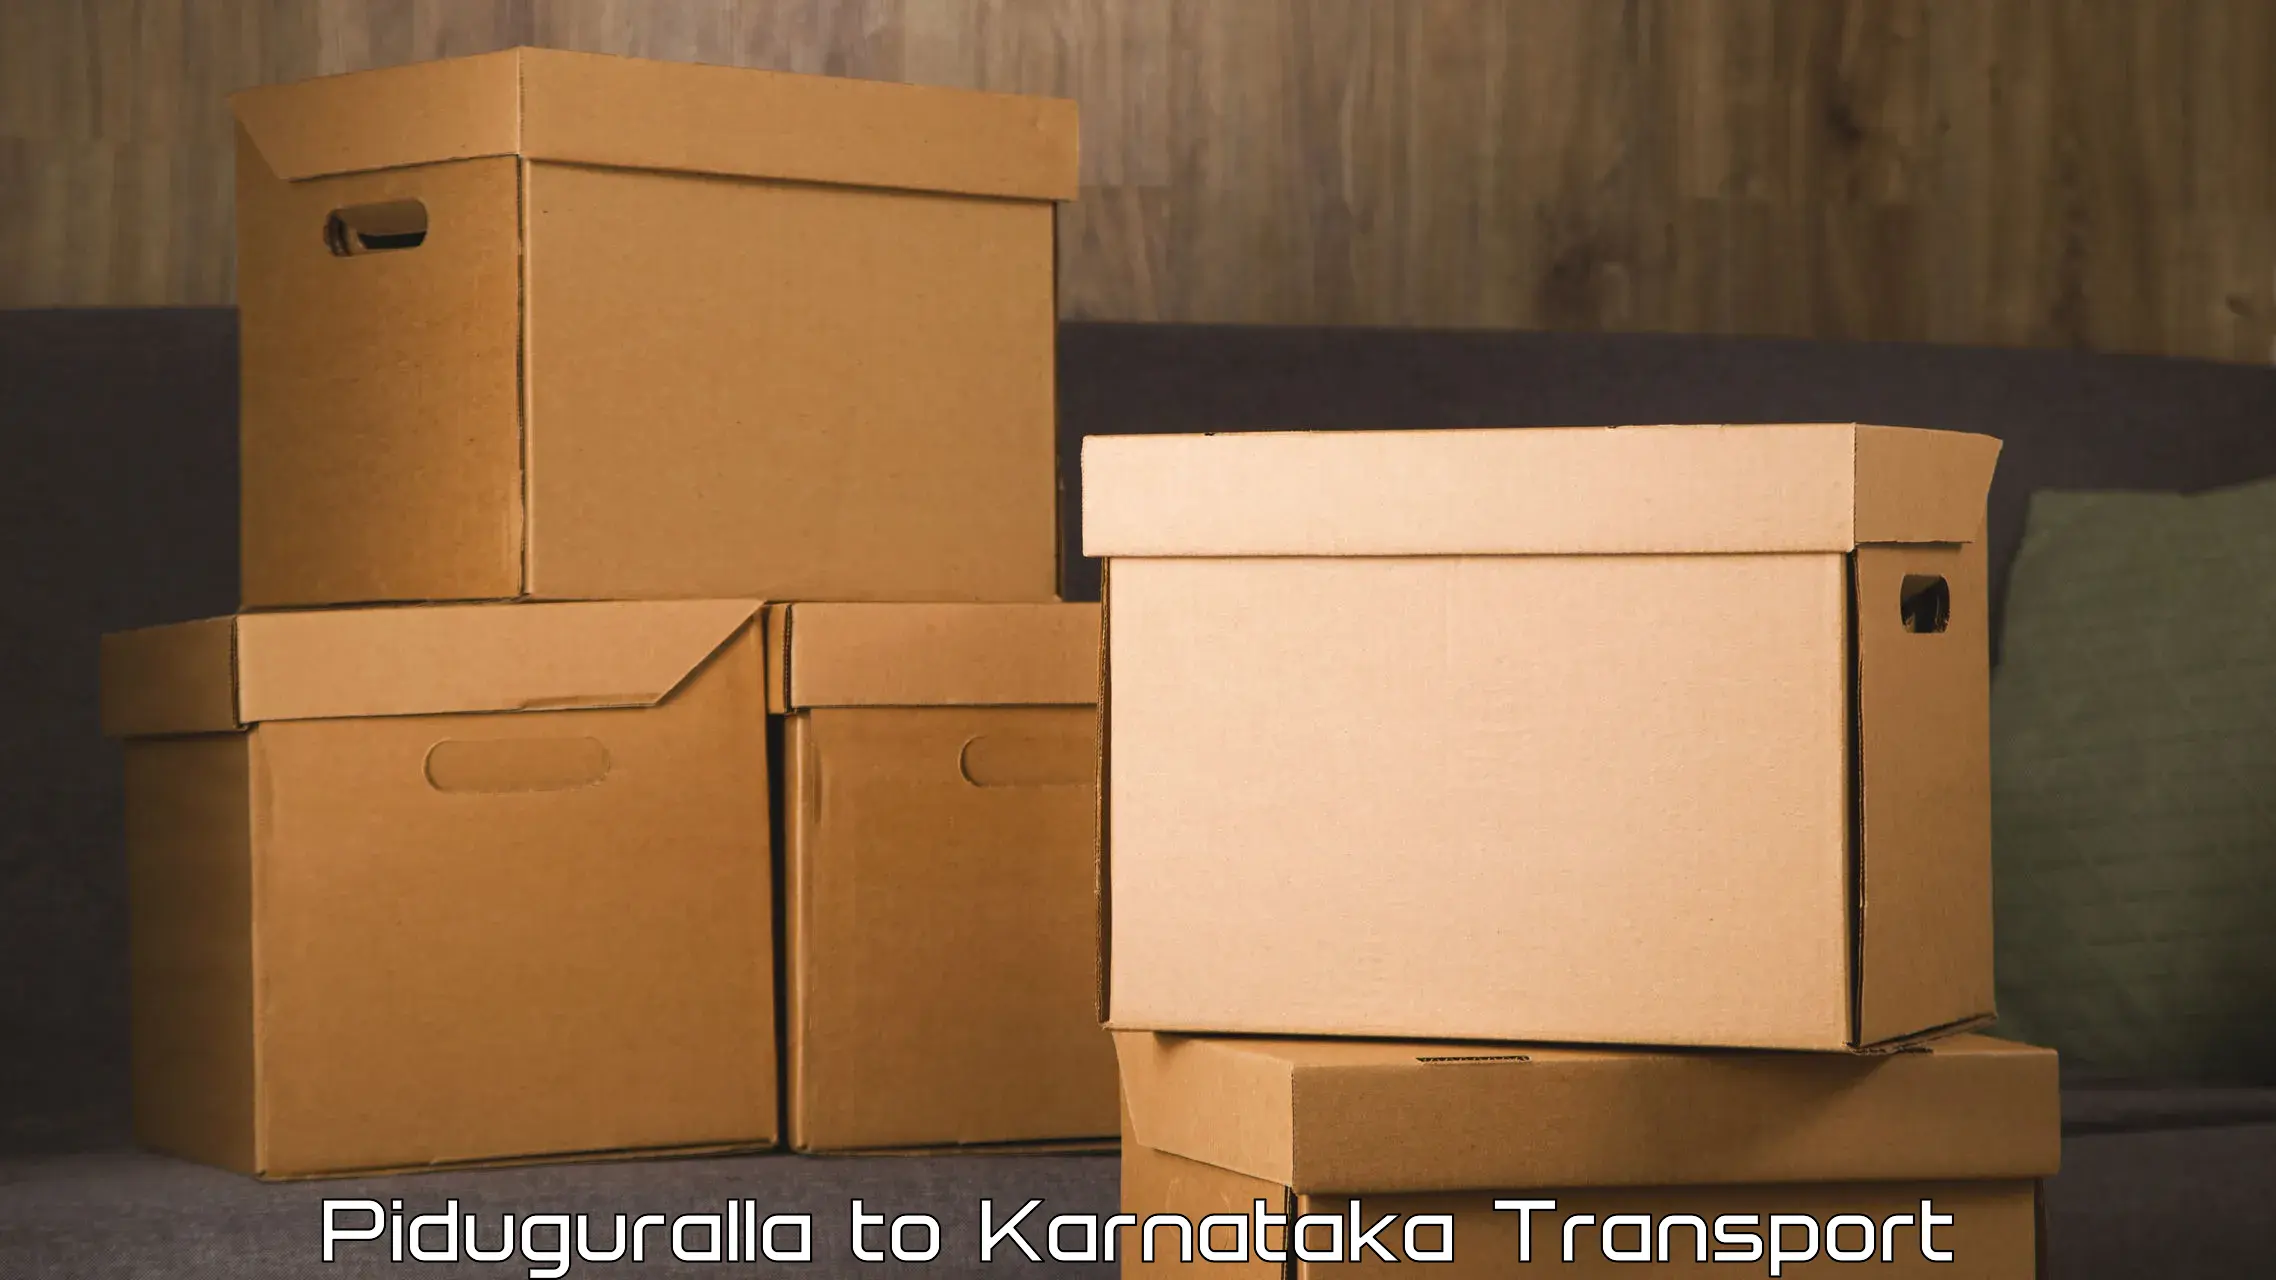 Delivery service Piduguralla to Channagiri